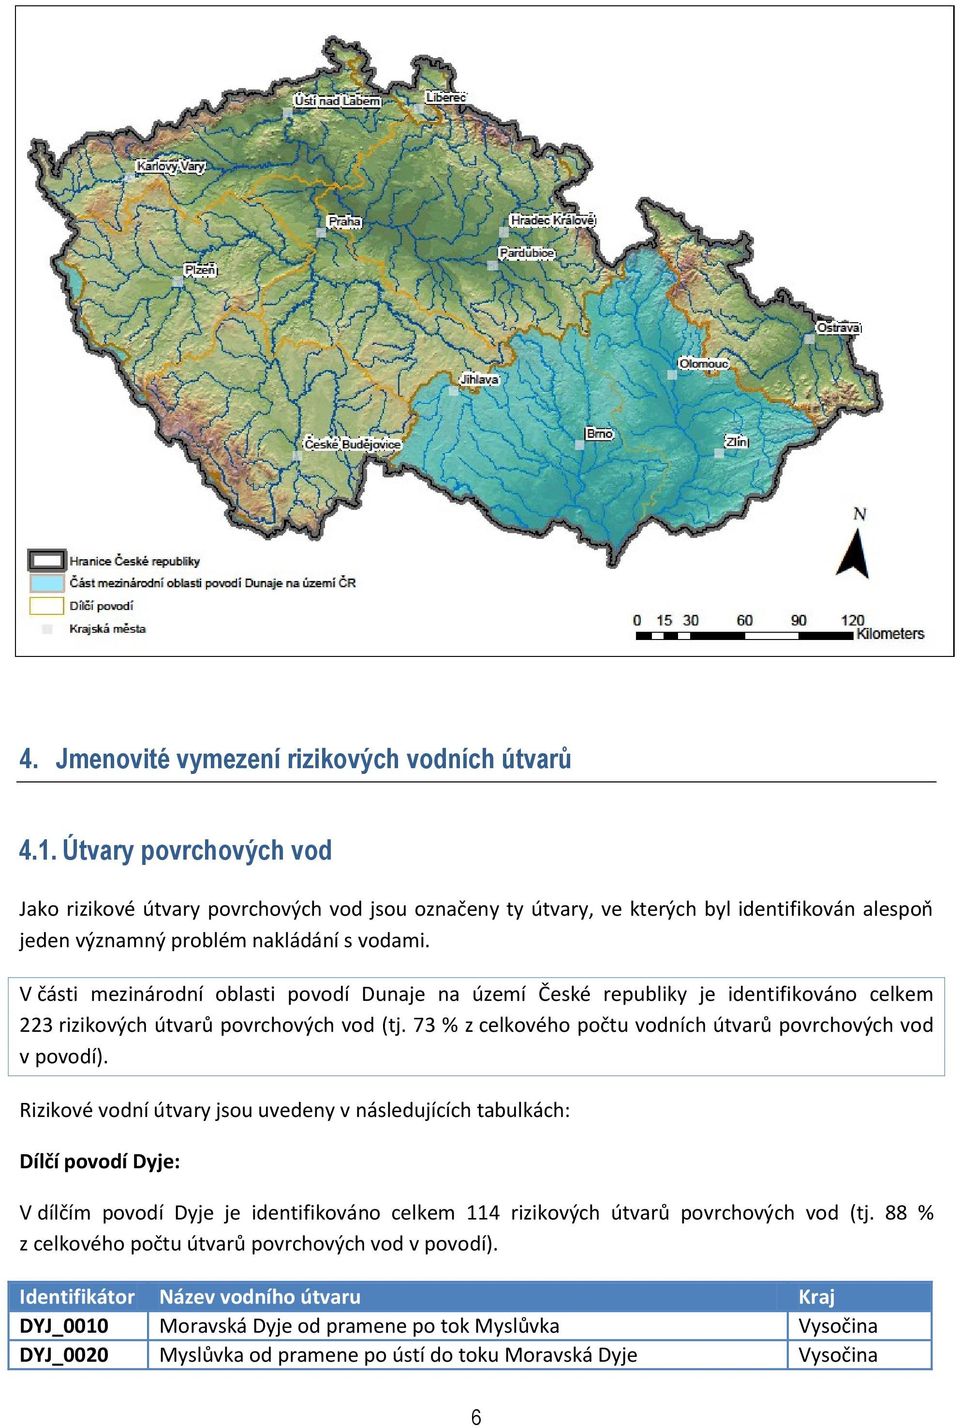 V části mezinárodní oblasti povodí Dunaje na území České republiky je identifikováno celkem 223 rizikových útvarů povrchových vod (tj. 73 % z celkového počtu vodních útvarů povrchových vod v povodí).